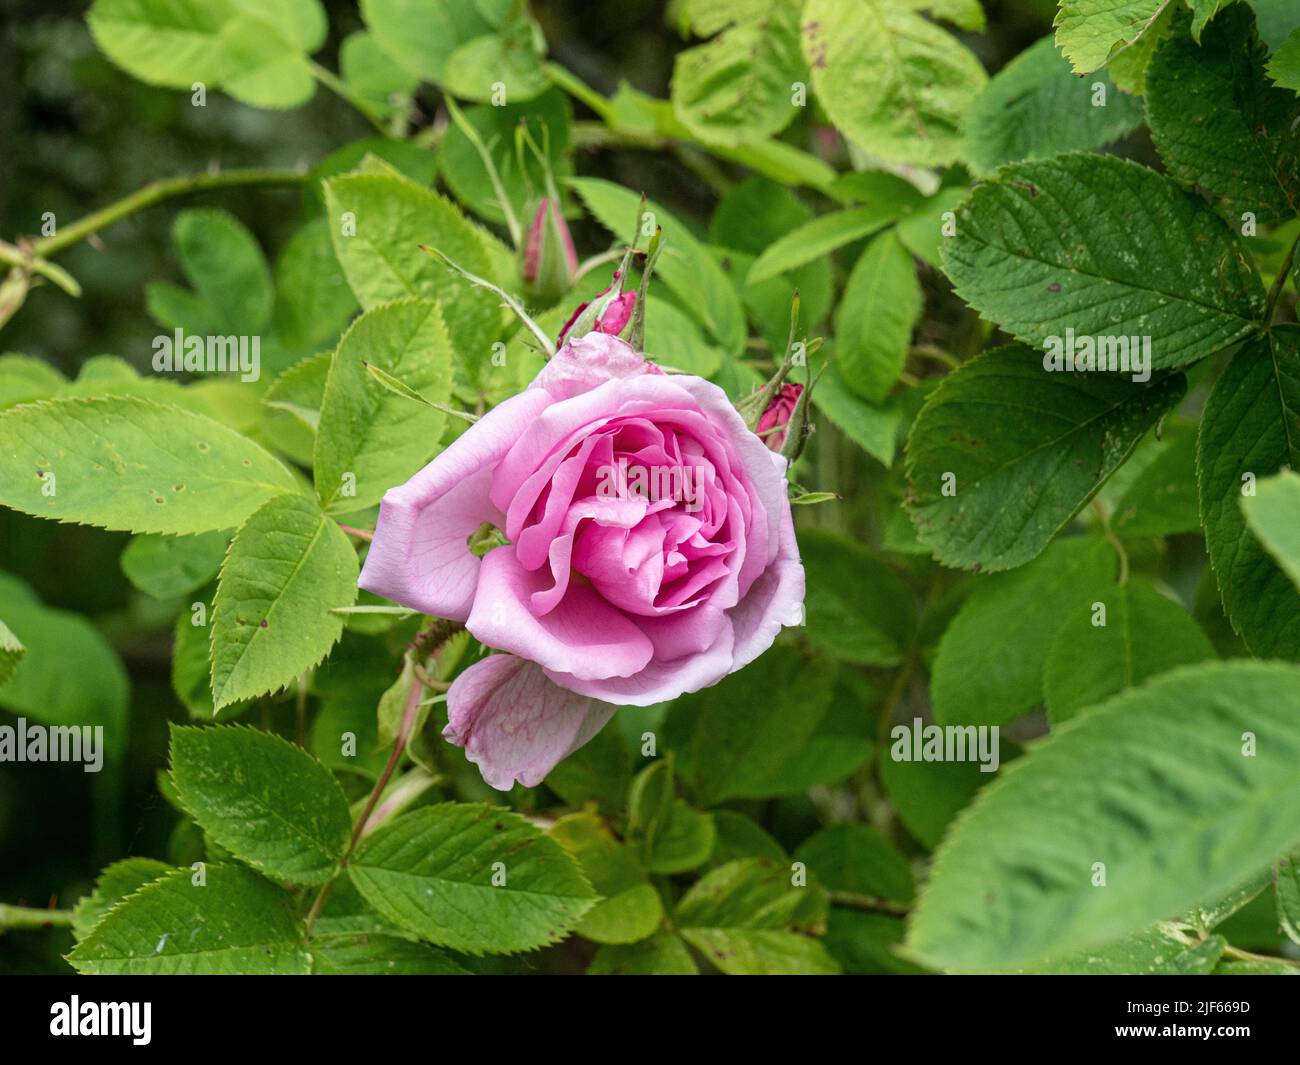 Eine Nahaufnahme der rosa Blume der Rosa damascena 'Quatro Saissons' gegen das leuchtend grüne Laub. Stockfoto